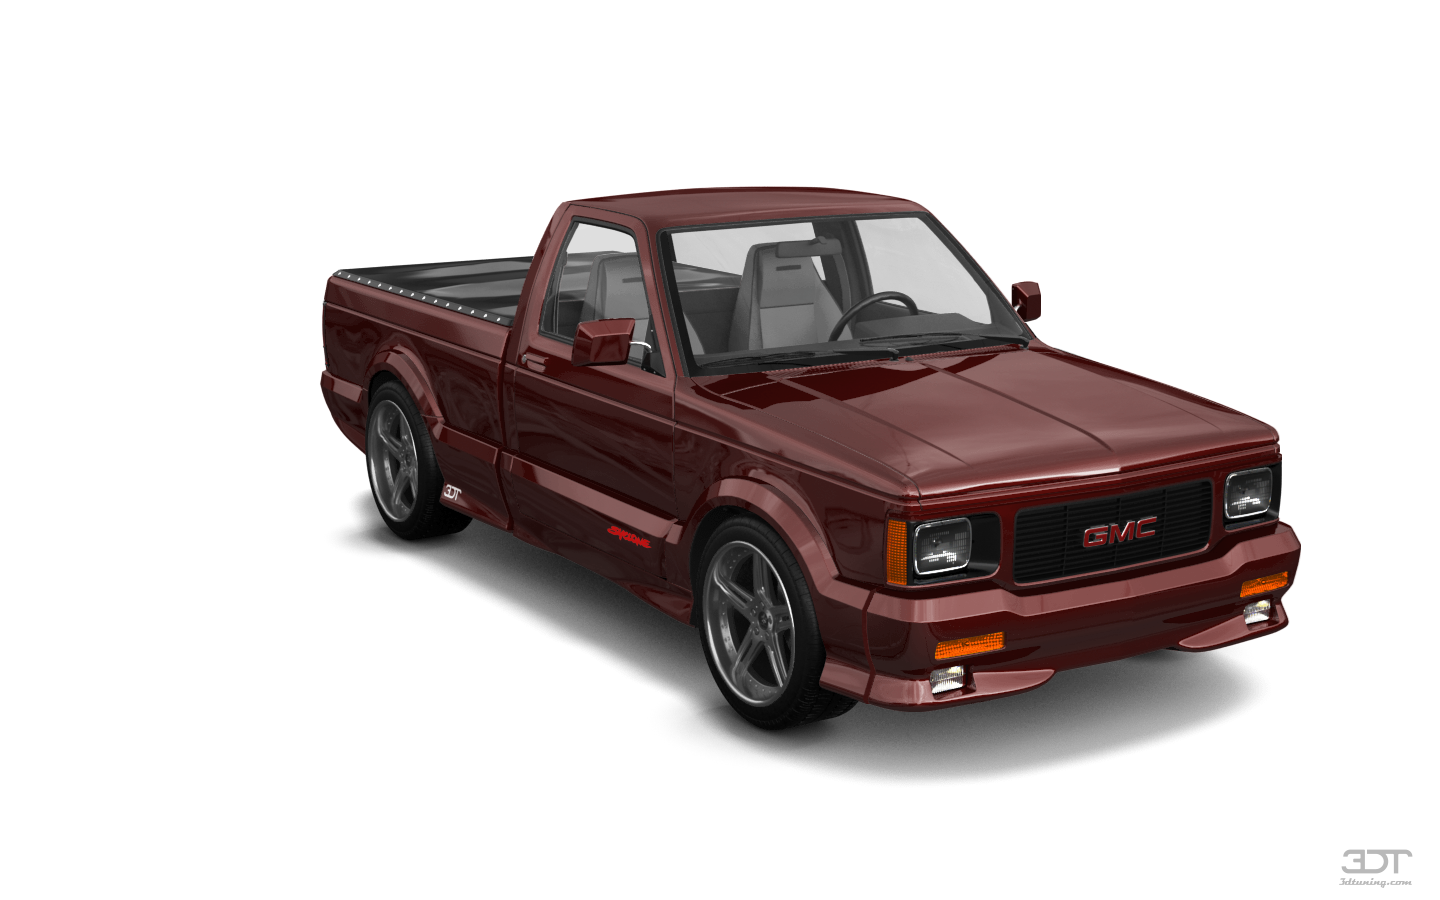 GMC Syclone 2 Door pickup truck 1991